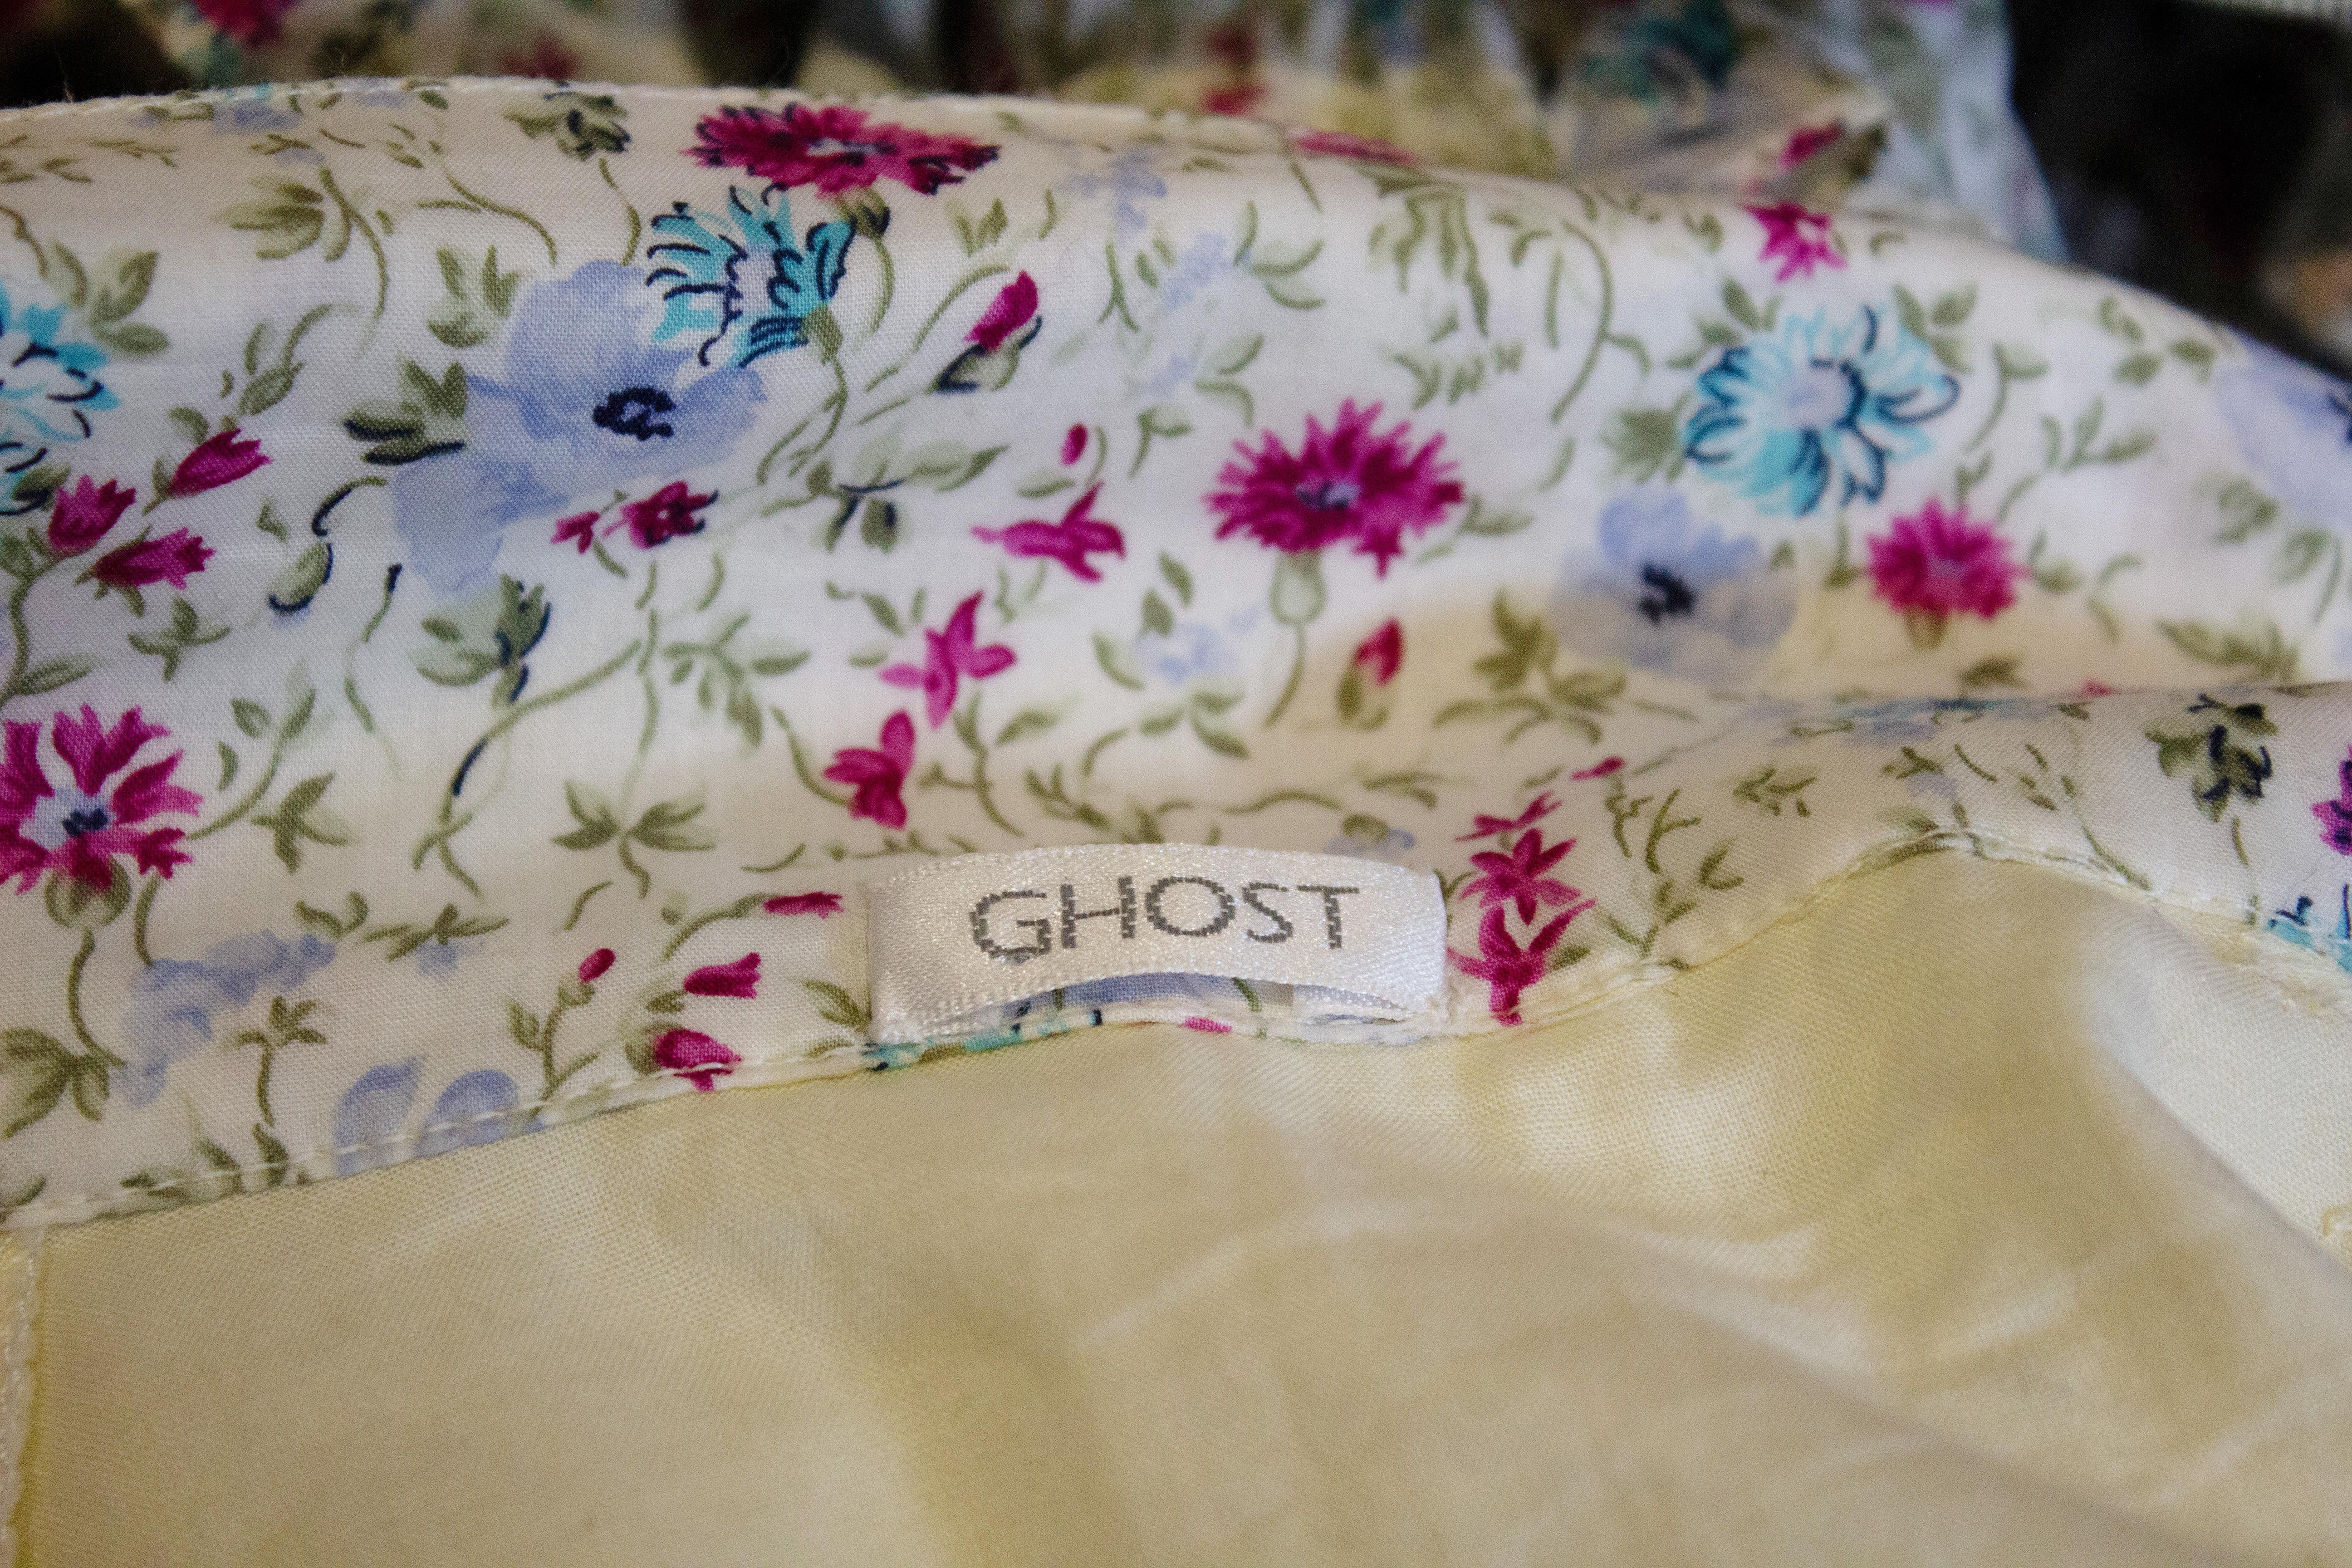 Jolie jupe vintage de Ghost, composée d'un mélange de rayures, de fleurs et de crème avec des broderies. Mesures Taille 24'', longueur 44''.